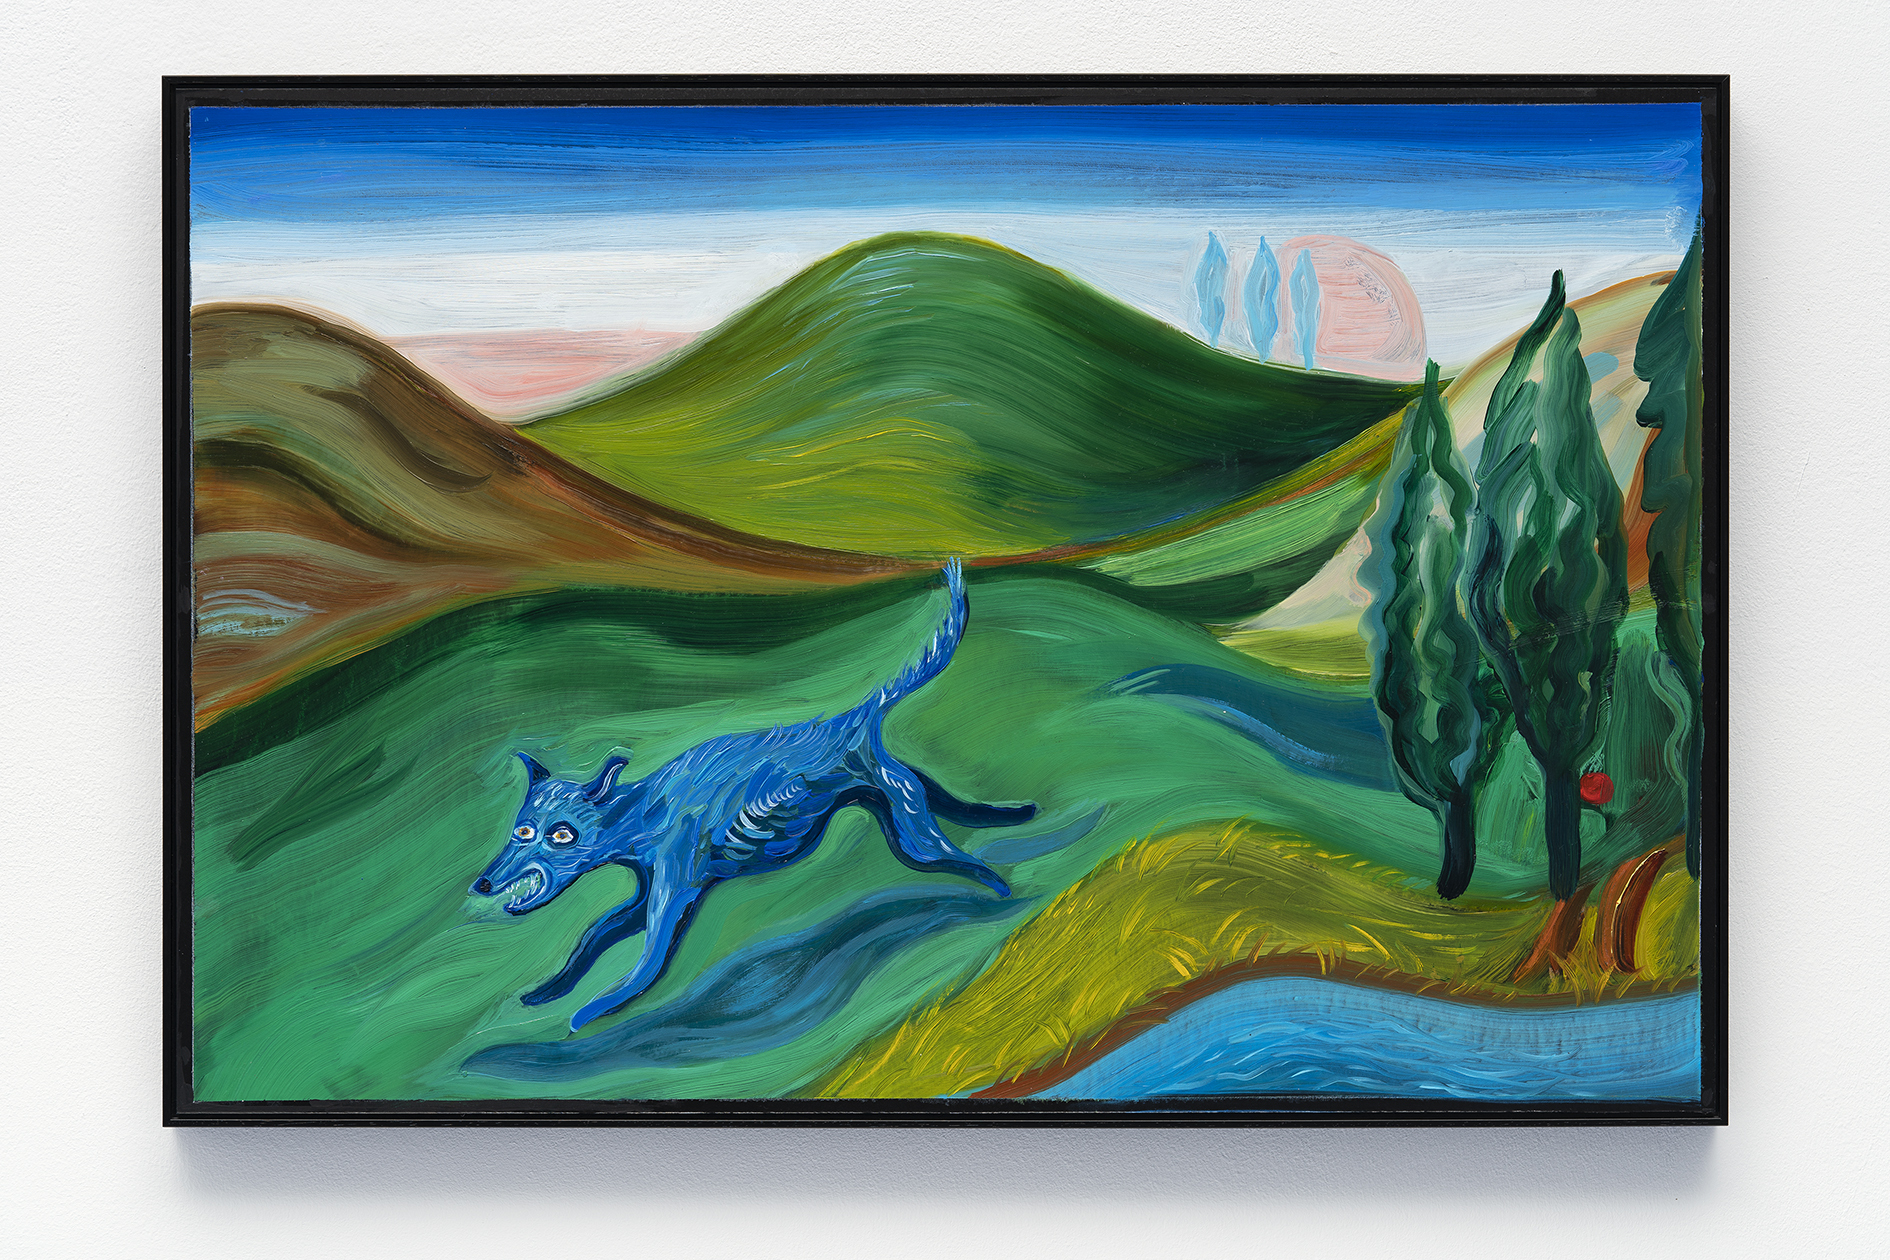 Olivia Parkes, The same River, 2021 – Oil on rag board, 52.5 x 77.5 x 2.5 cm